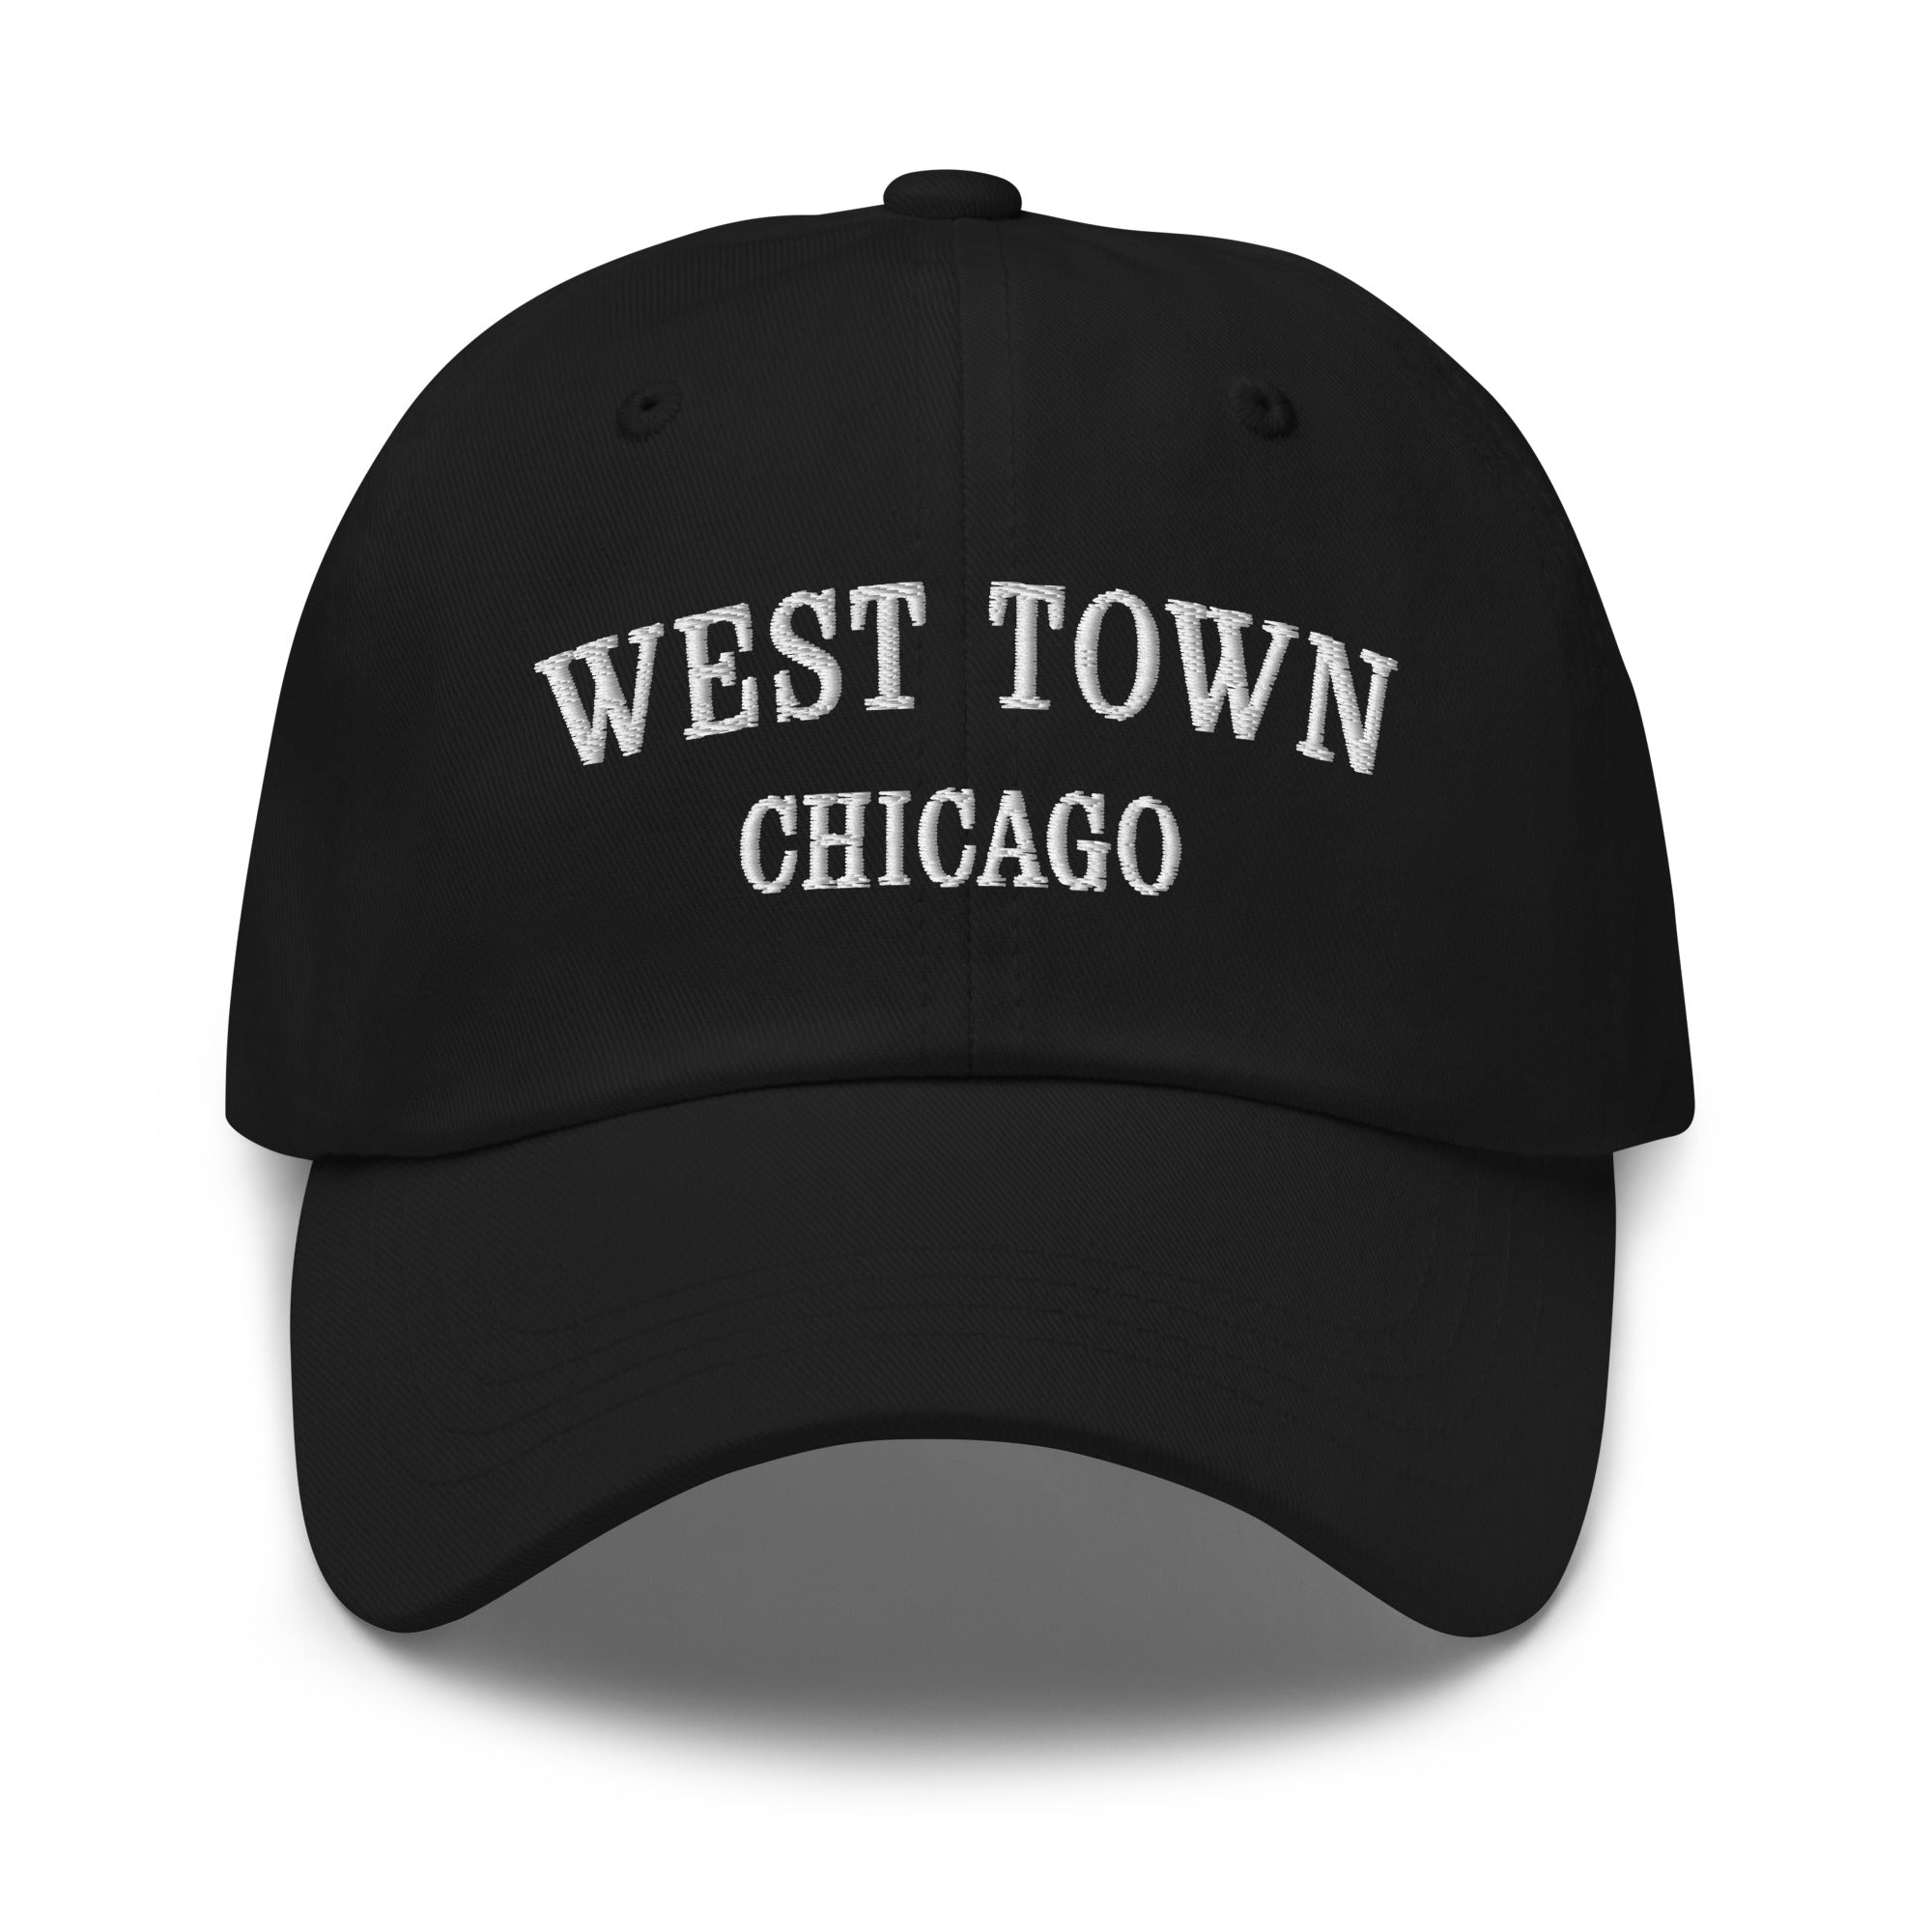 West Town Chicago Dad Hat - White Stitching